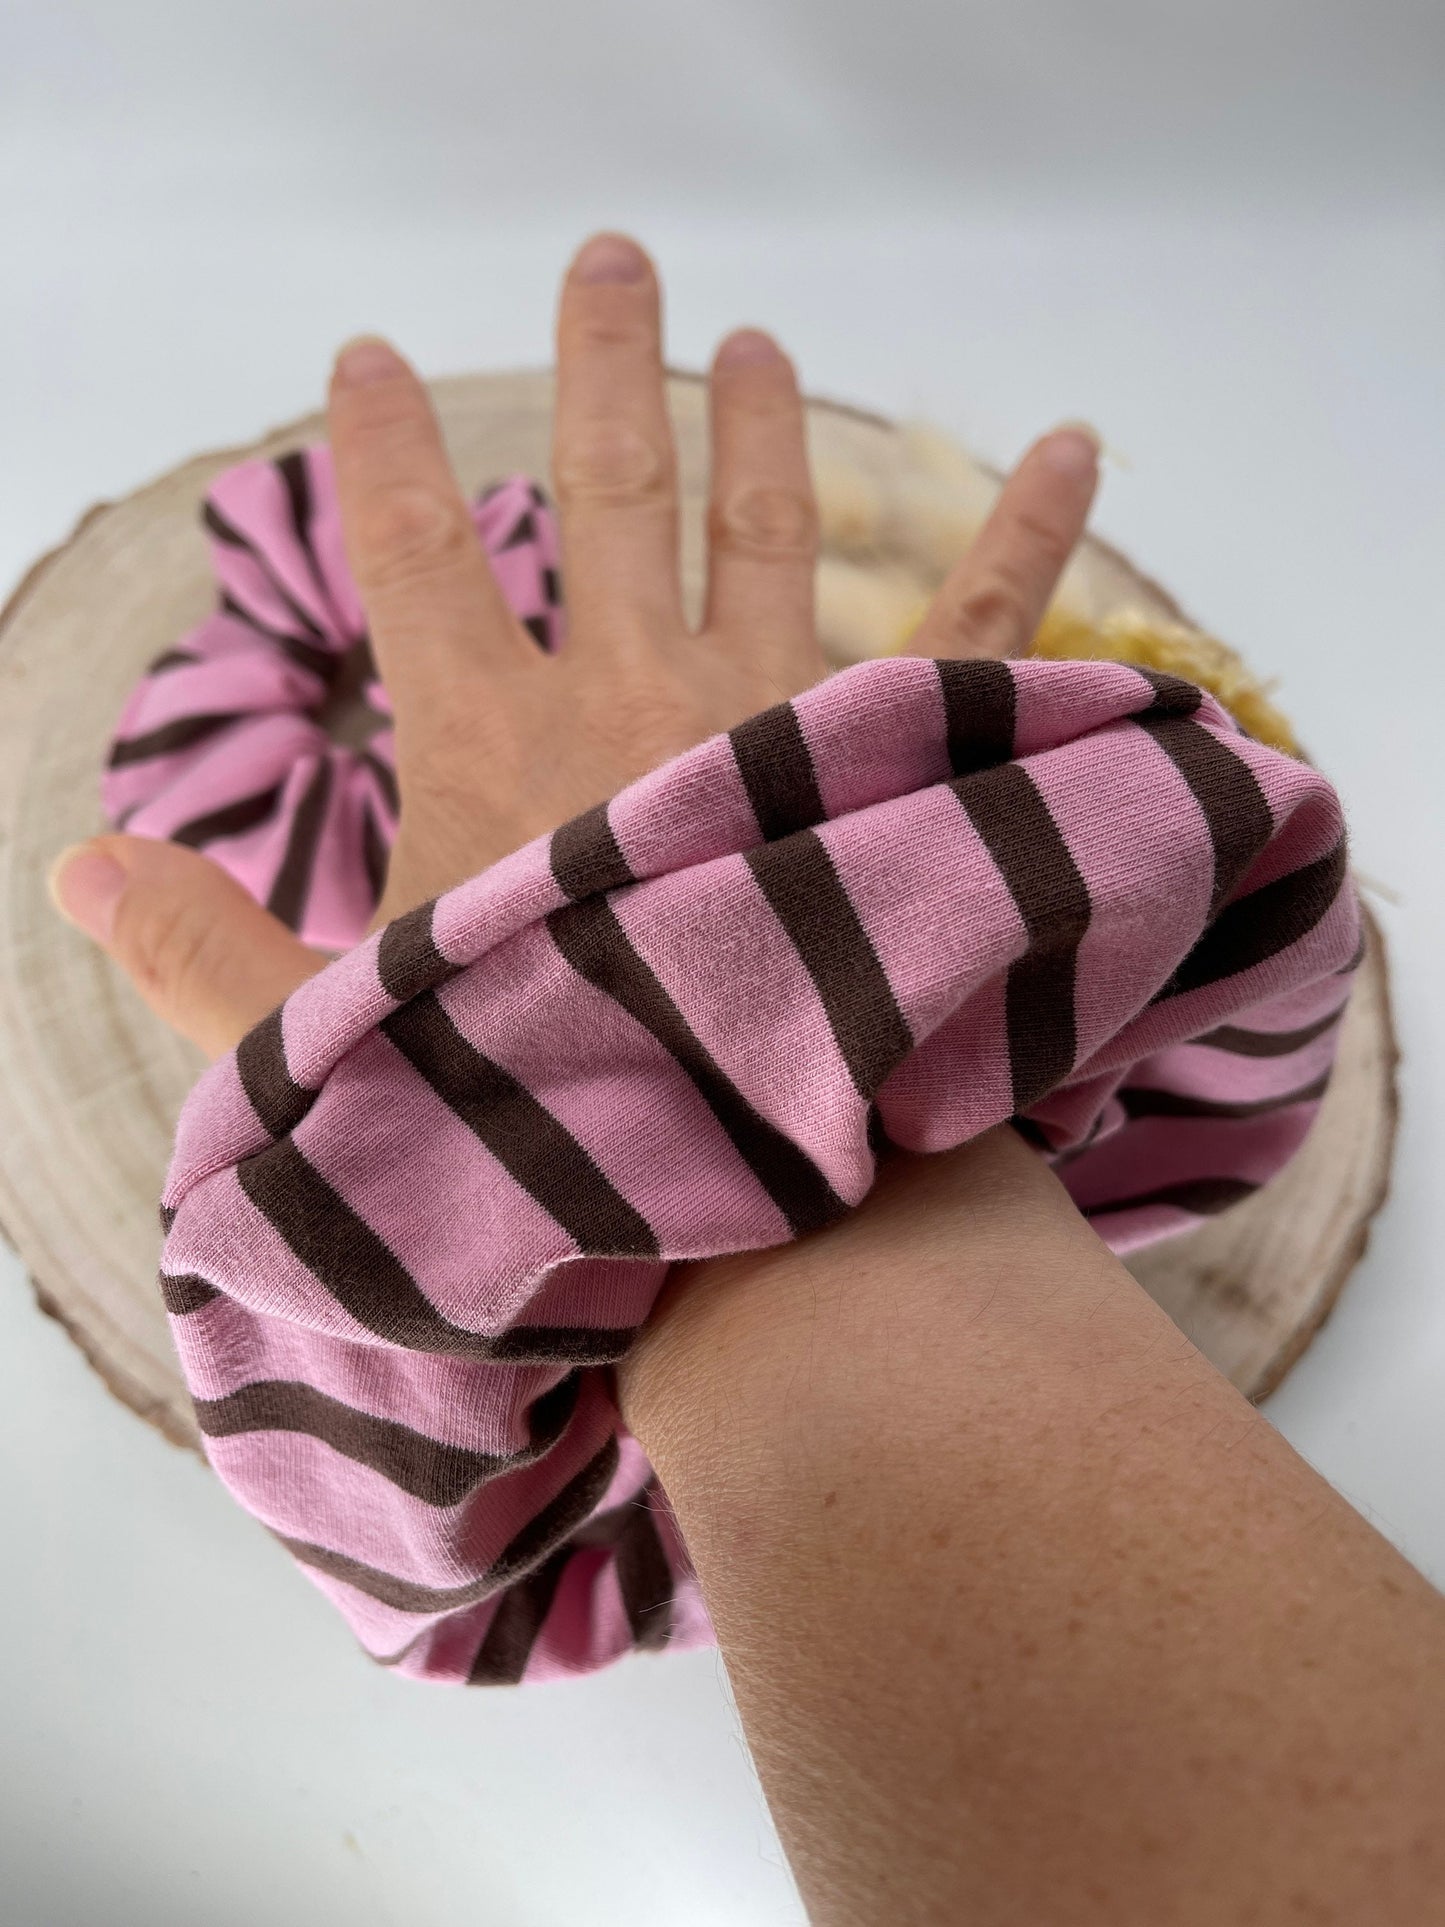 Scrunchie Haargummi elastisches Haarband Streifen rosa braun für feines oder dickes Haar